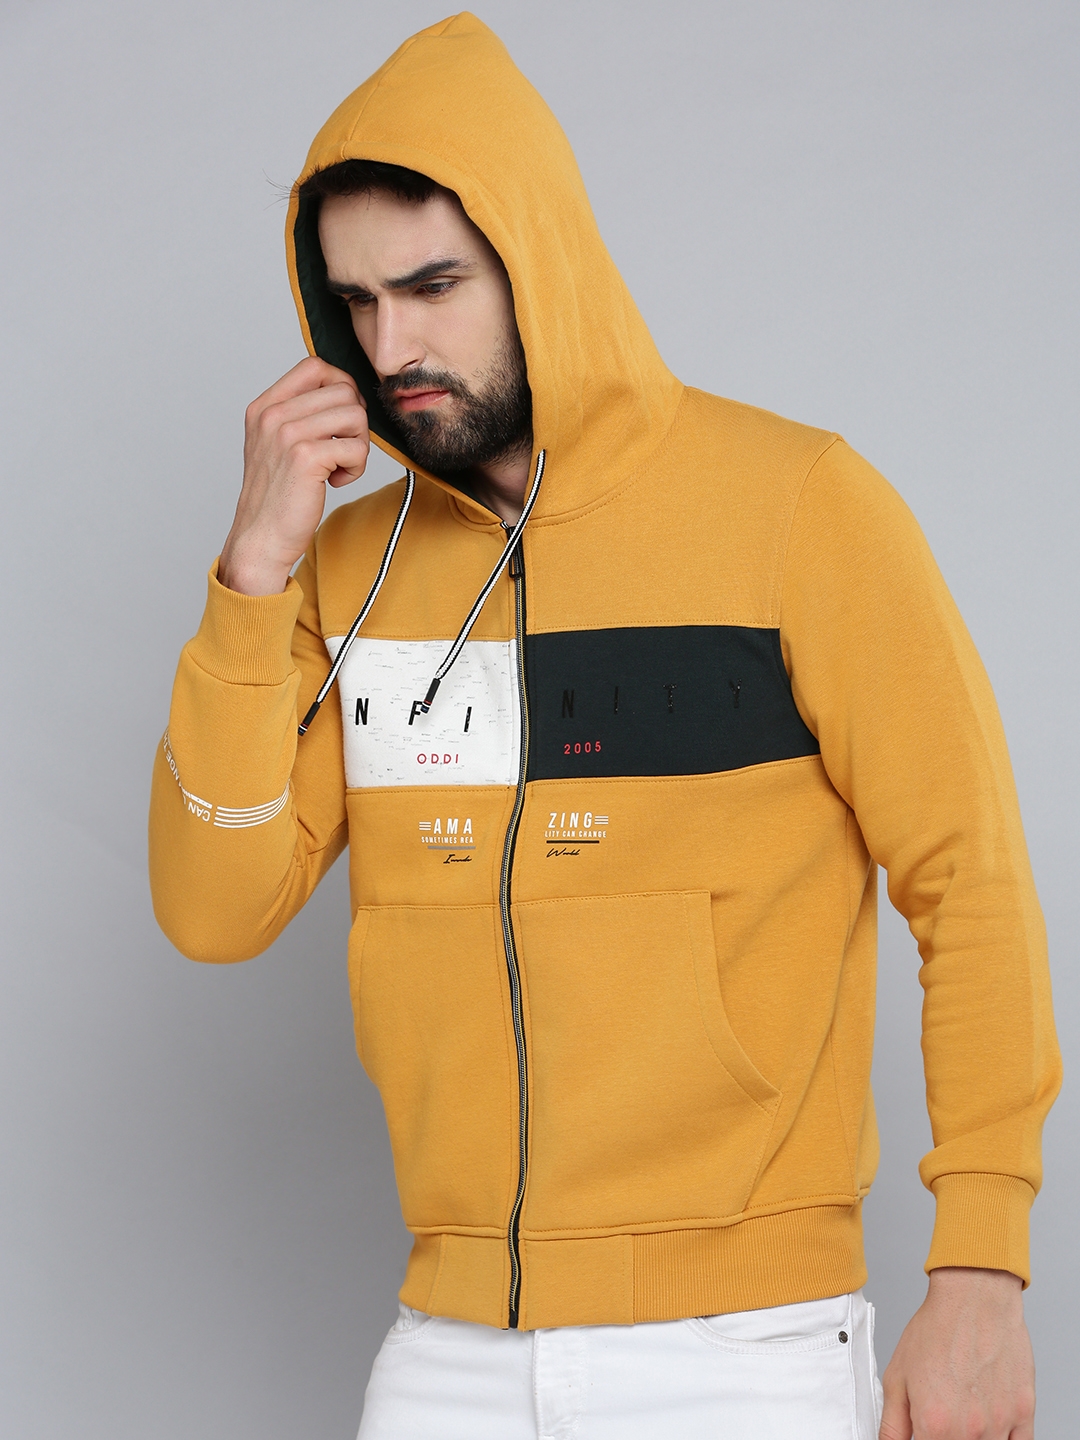 Men's Yellow Cotton Solid Hoodies